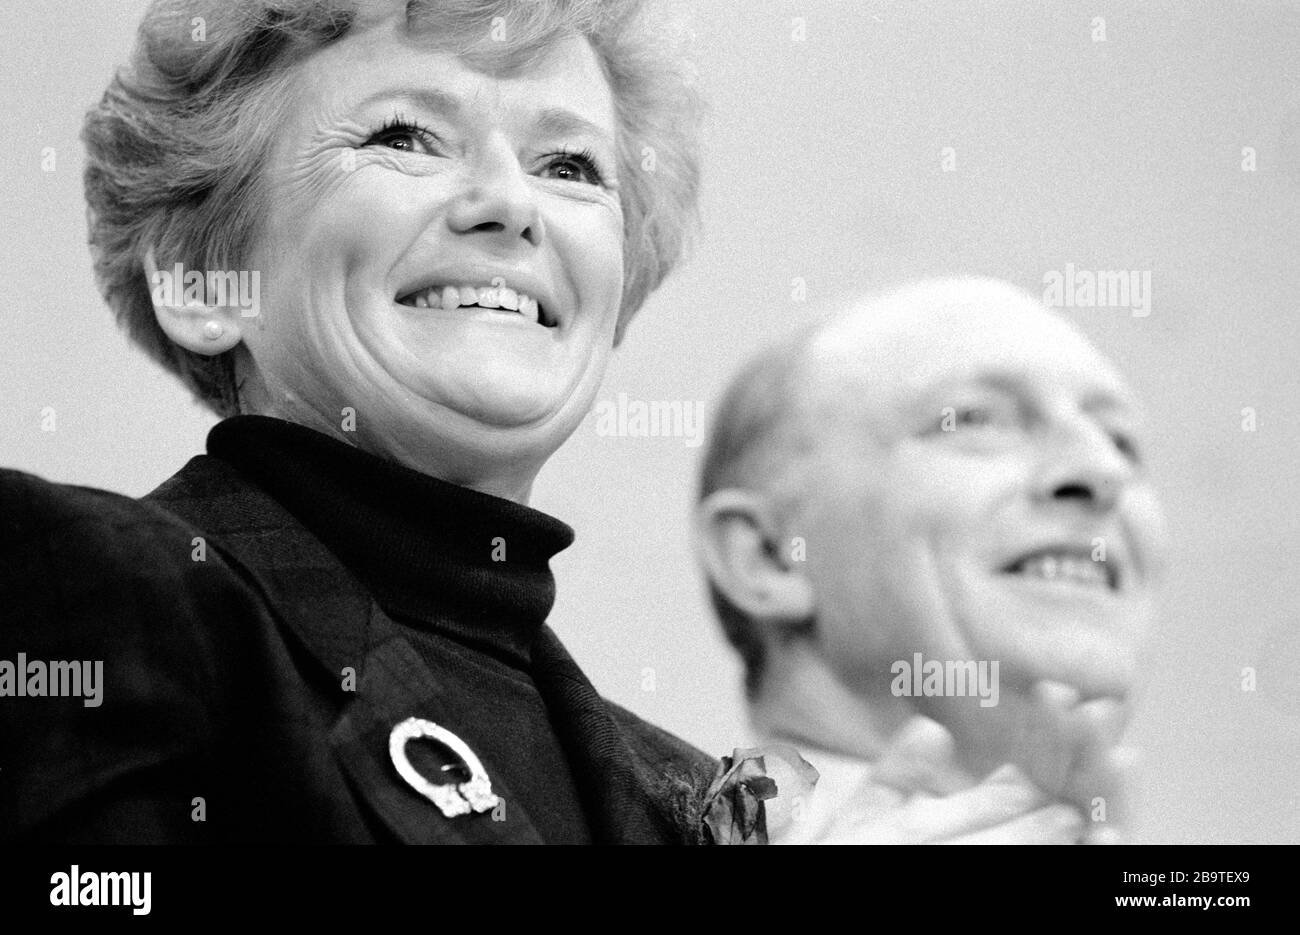 Neil e Glenys Kinnock, ex leader del Partito laburista, Regno Unito. Foto Stock